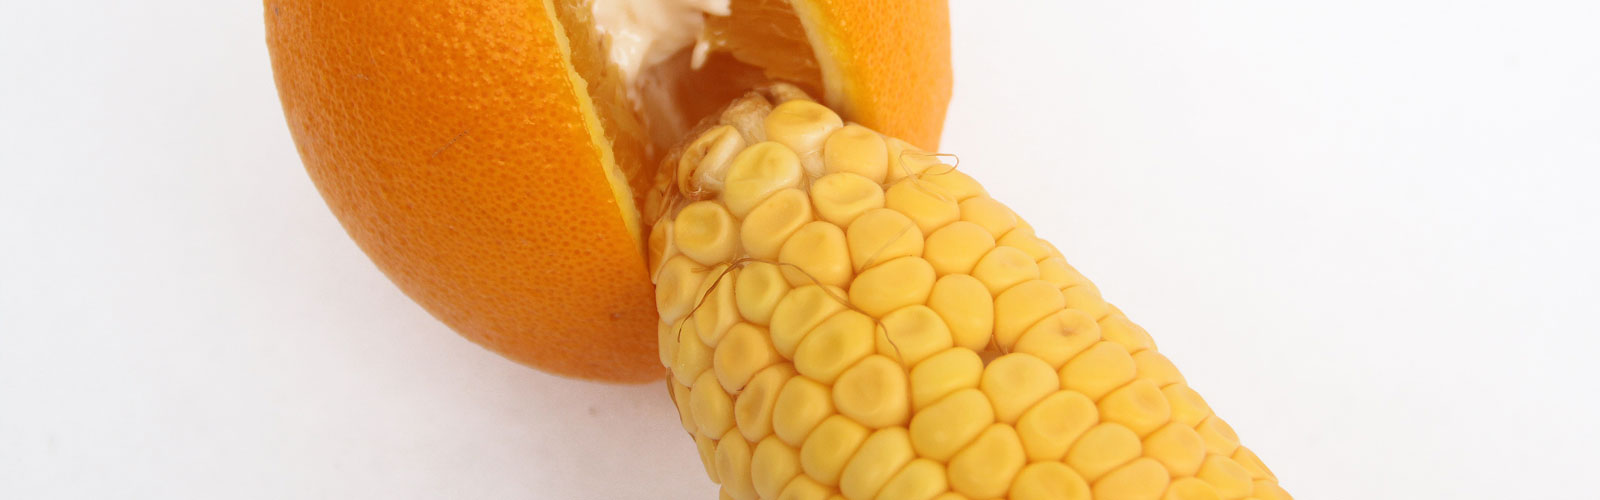 Cob of corn next to orange sliced open